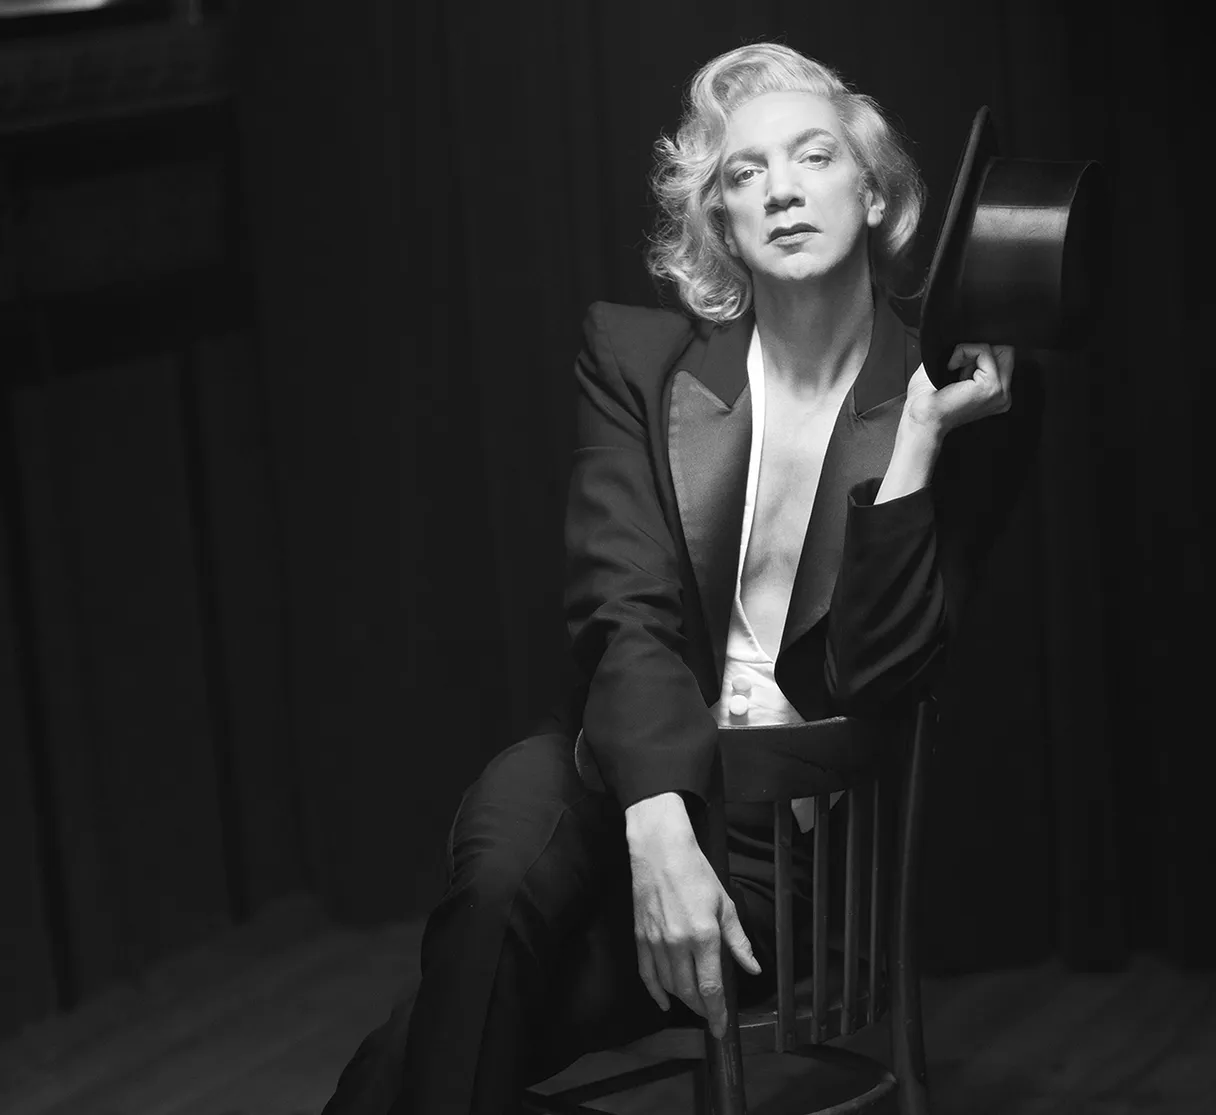 Renaissance Theater Berlin, Schauspieler als Marlene Dietrich sitzt im schwarzen Anzug auf einem Stuhl und hält einen Hut in der Hand, schwarz weißes Bild